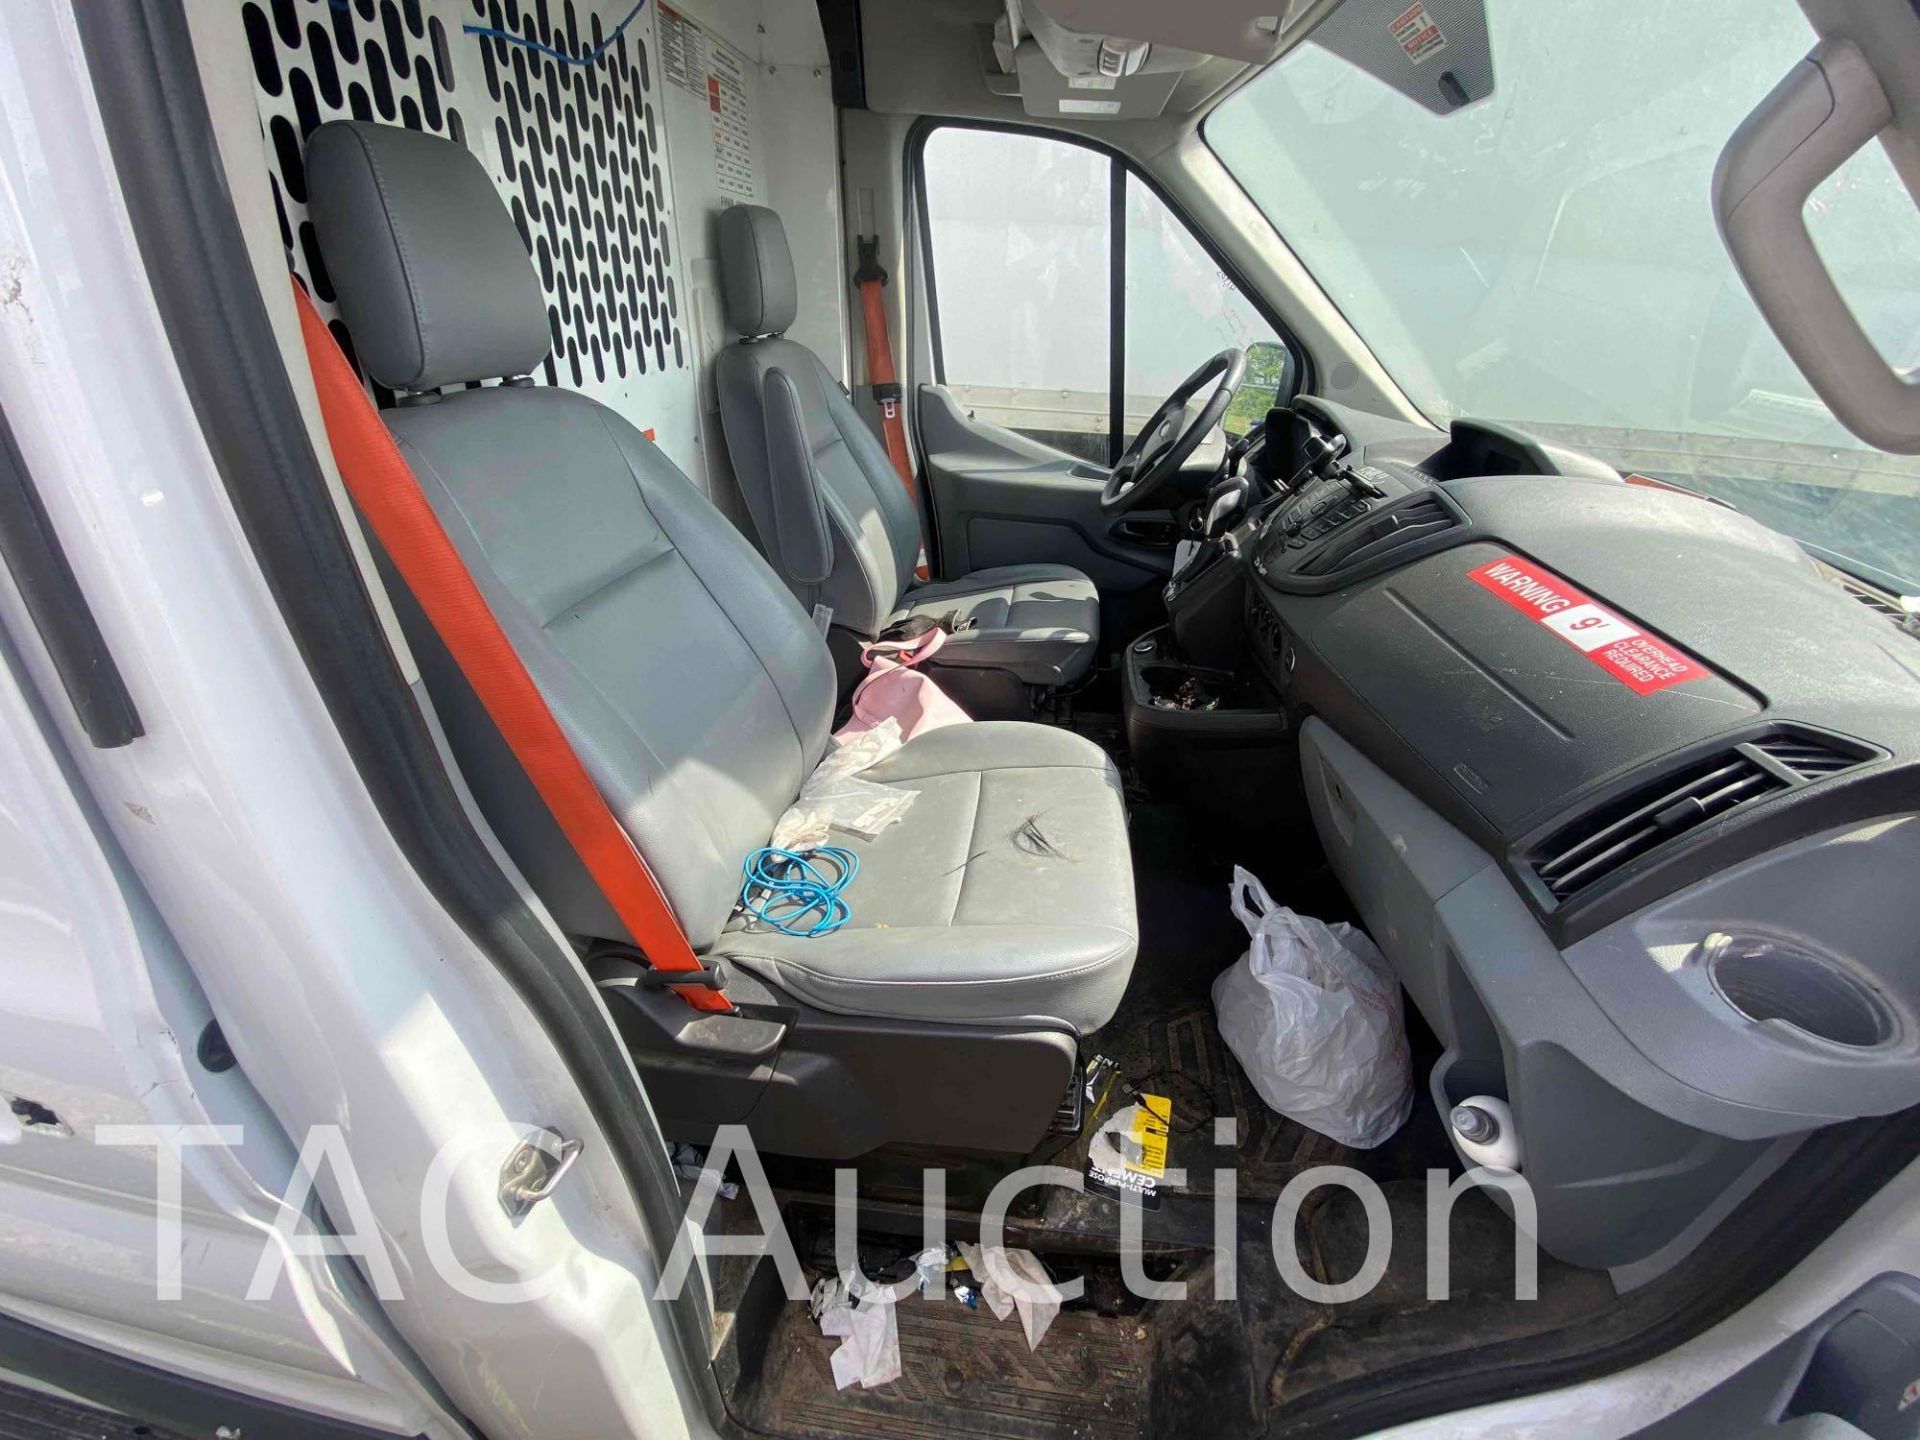 2019 Ford Transit 150 Cargo Van - Image 20 of 53